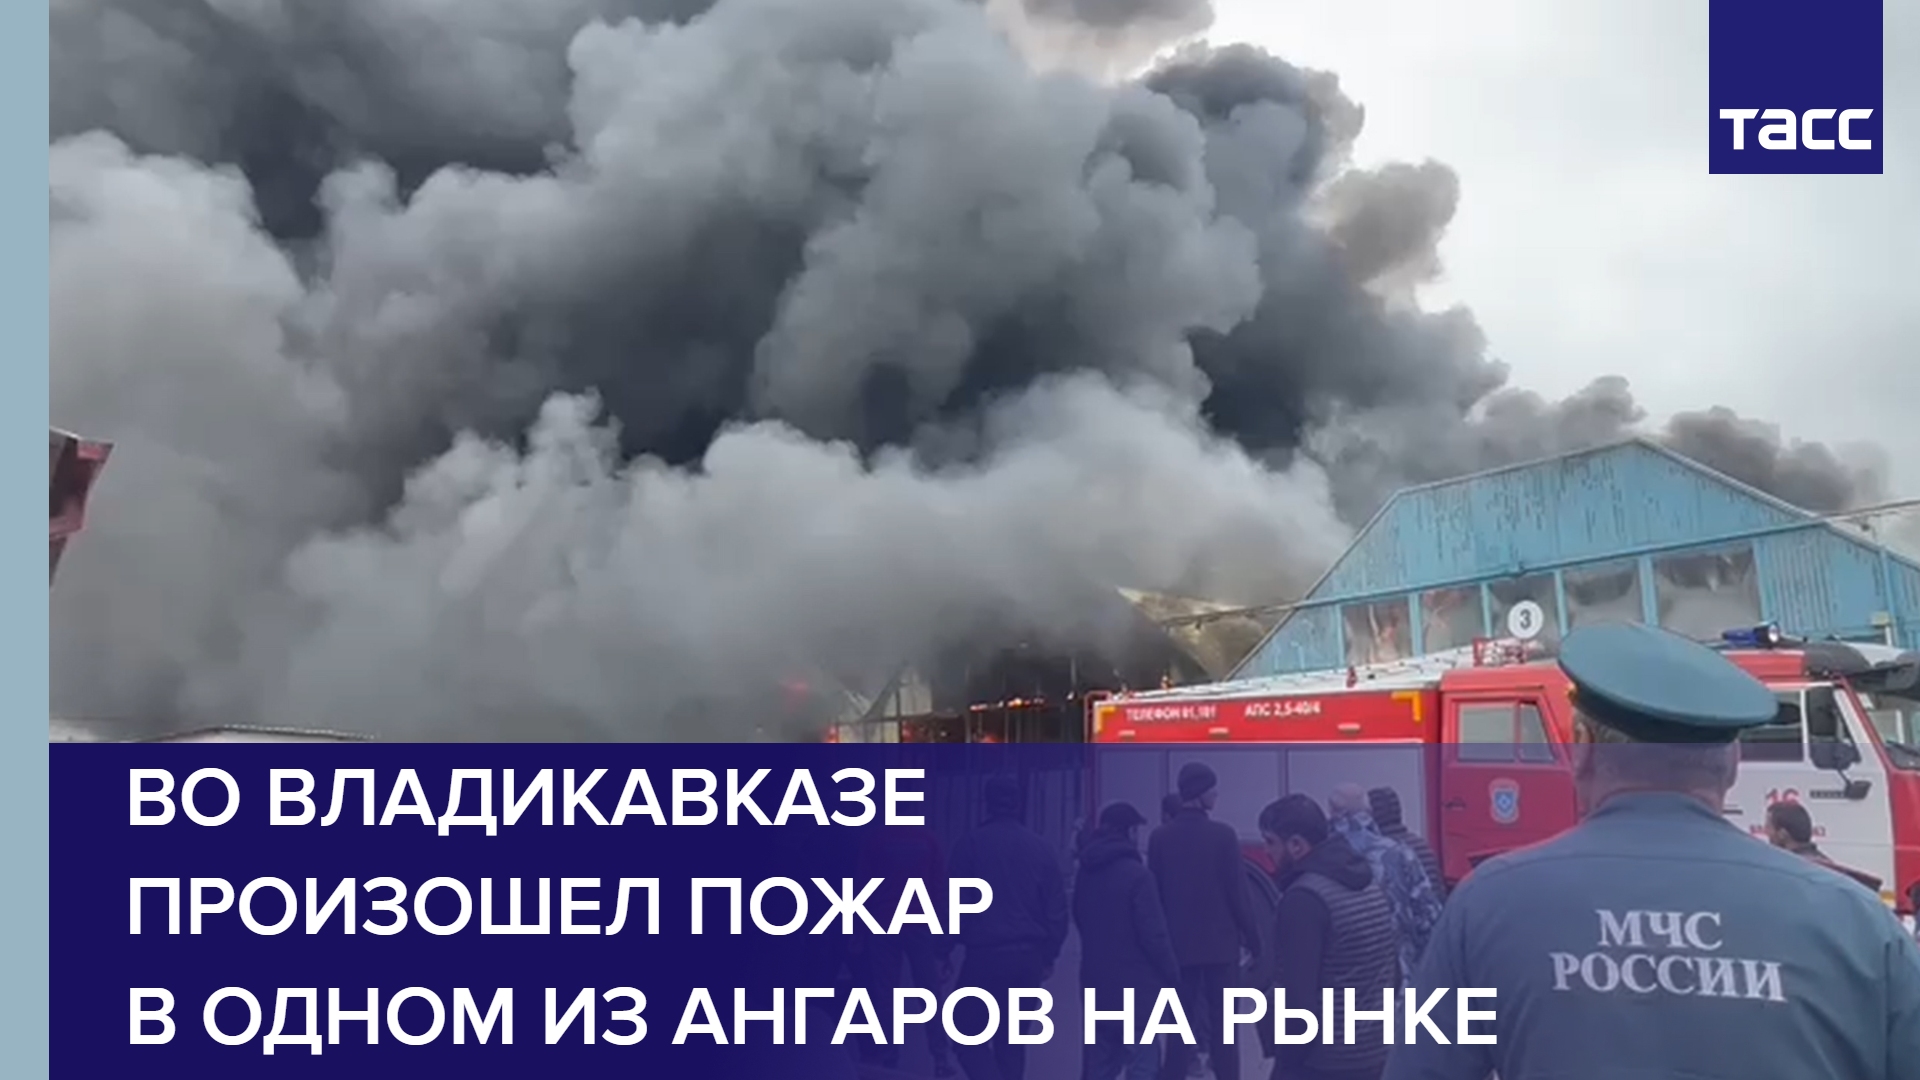 Во Владикавказе произошел пожар в одном из ангаров на рынке #shorts